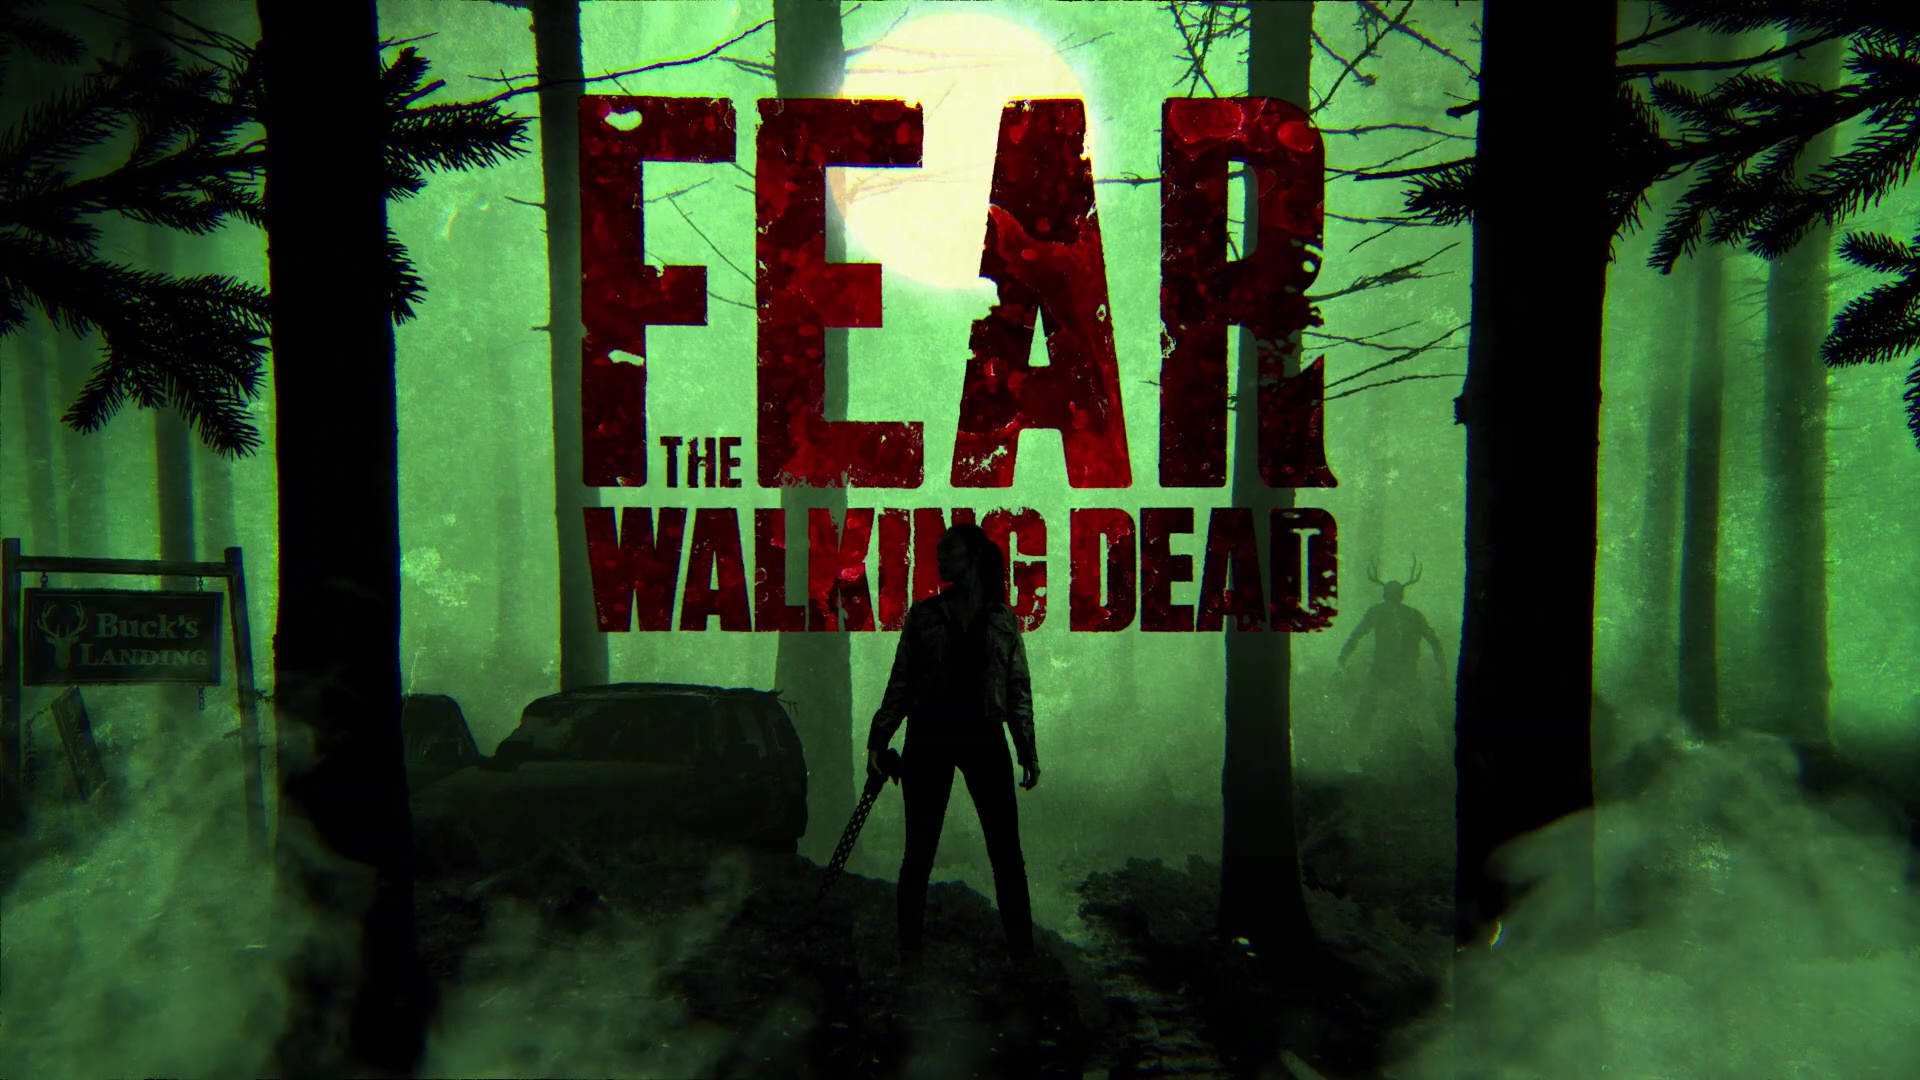 Fear The Walking Dead Season 6 Wallpapers